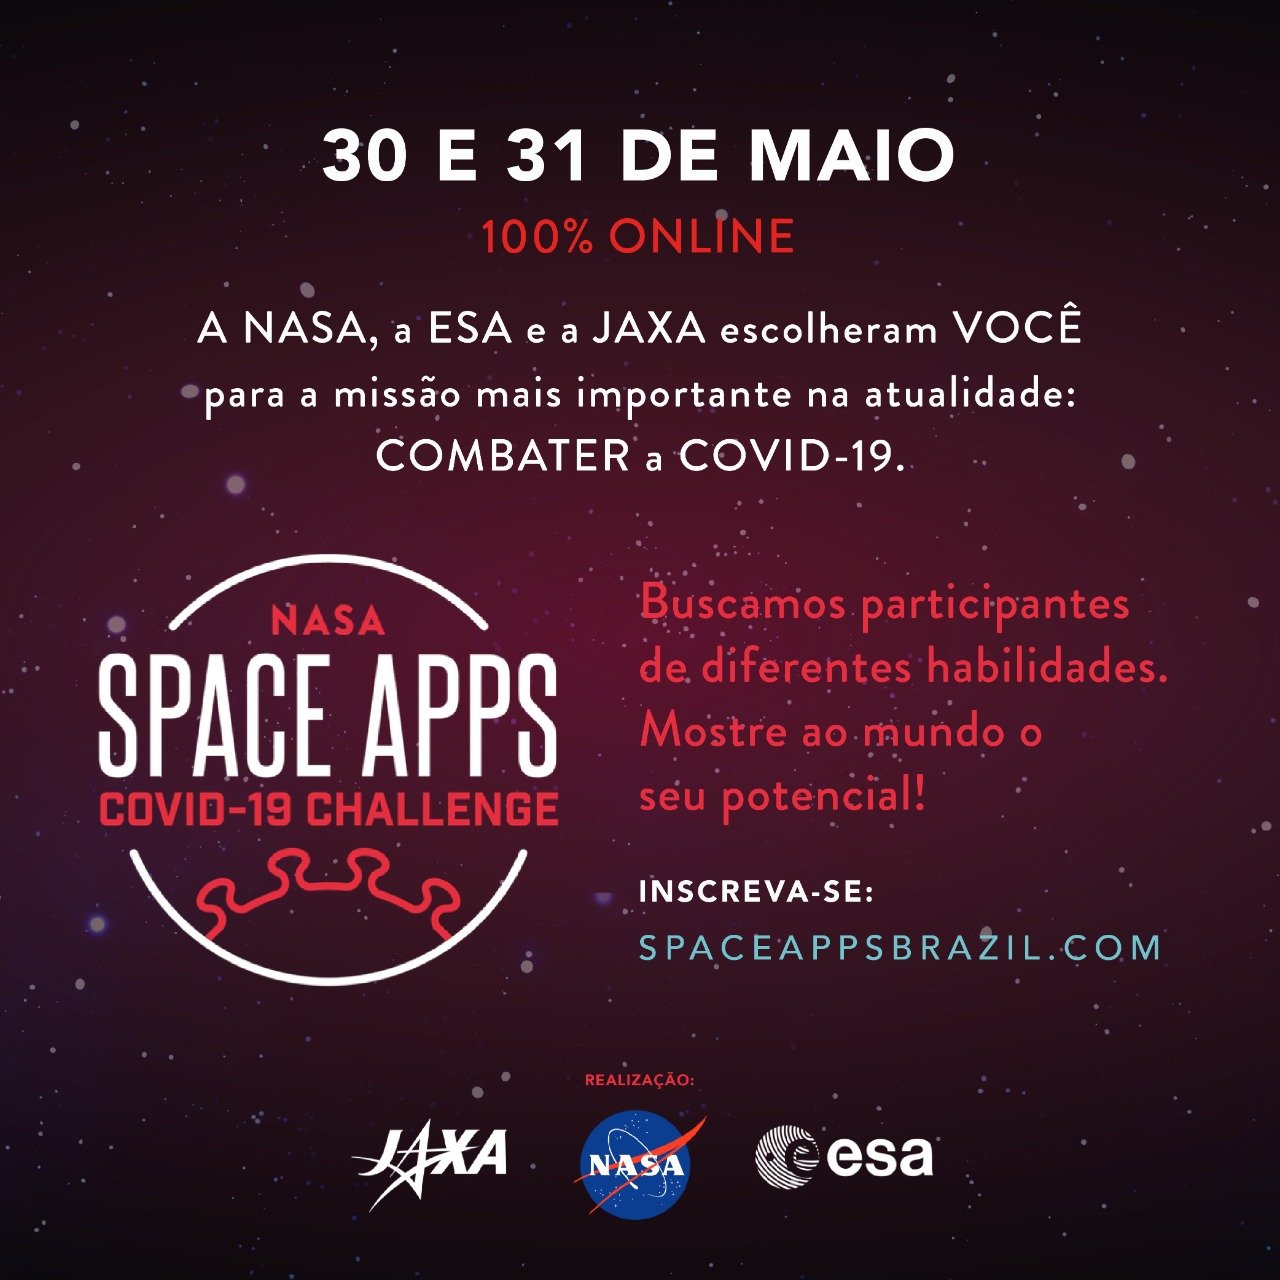 Foto: Colaboração/NASA Space Apps COVID-19